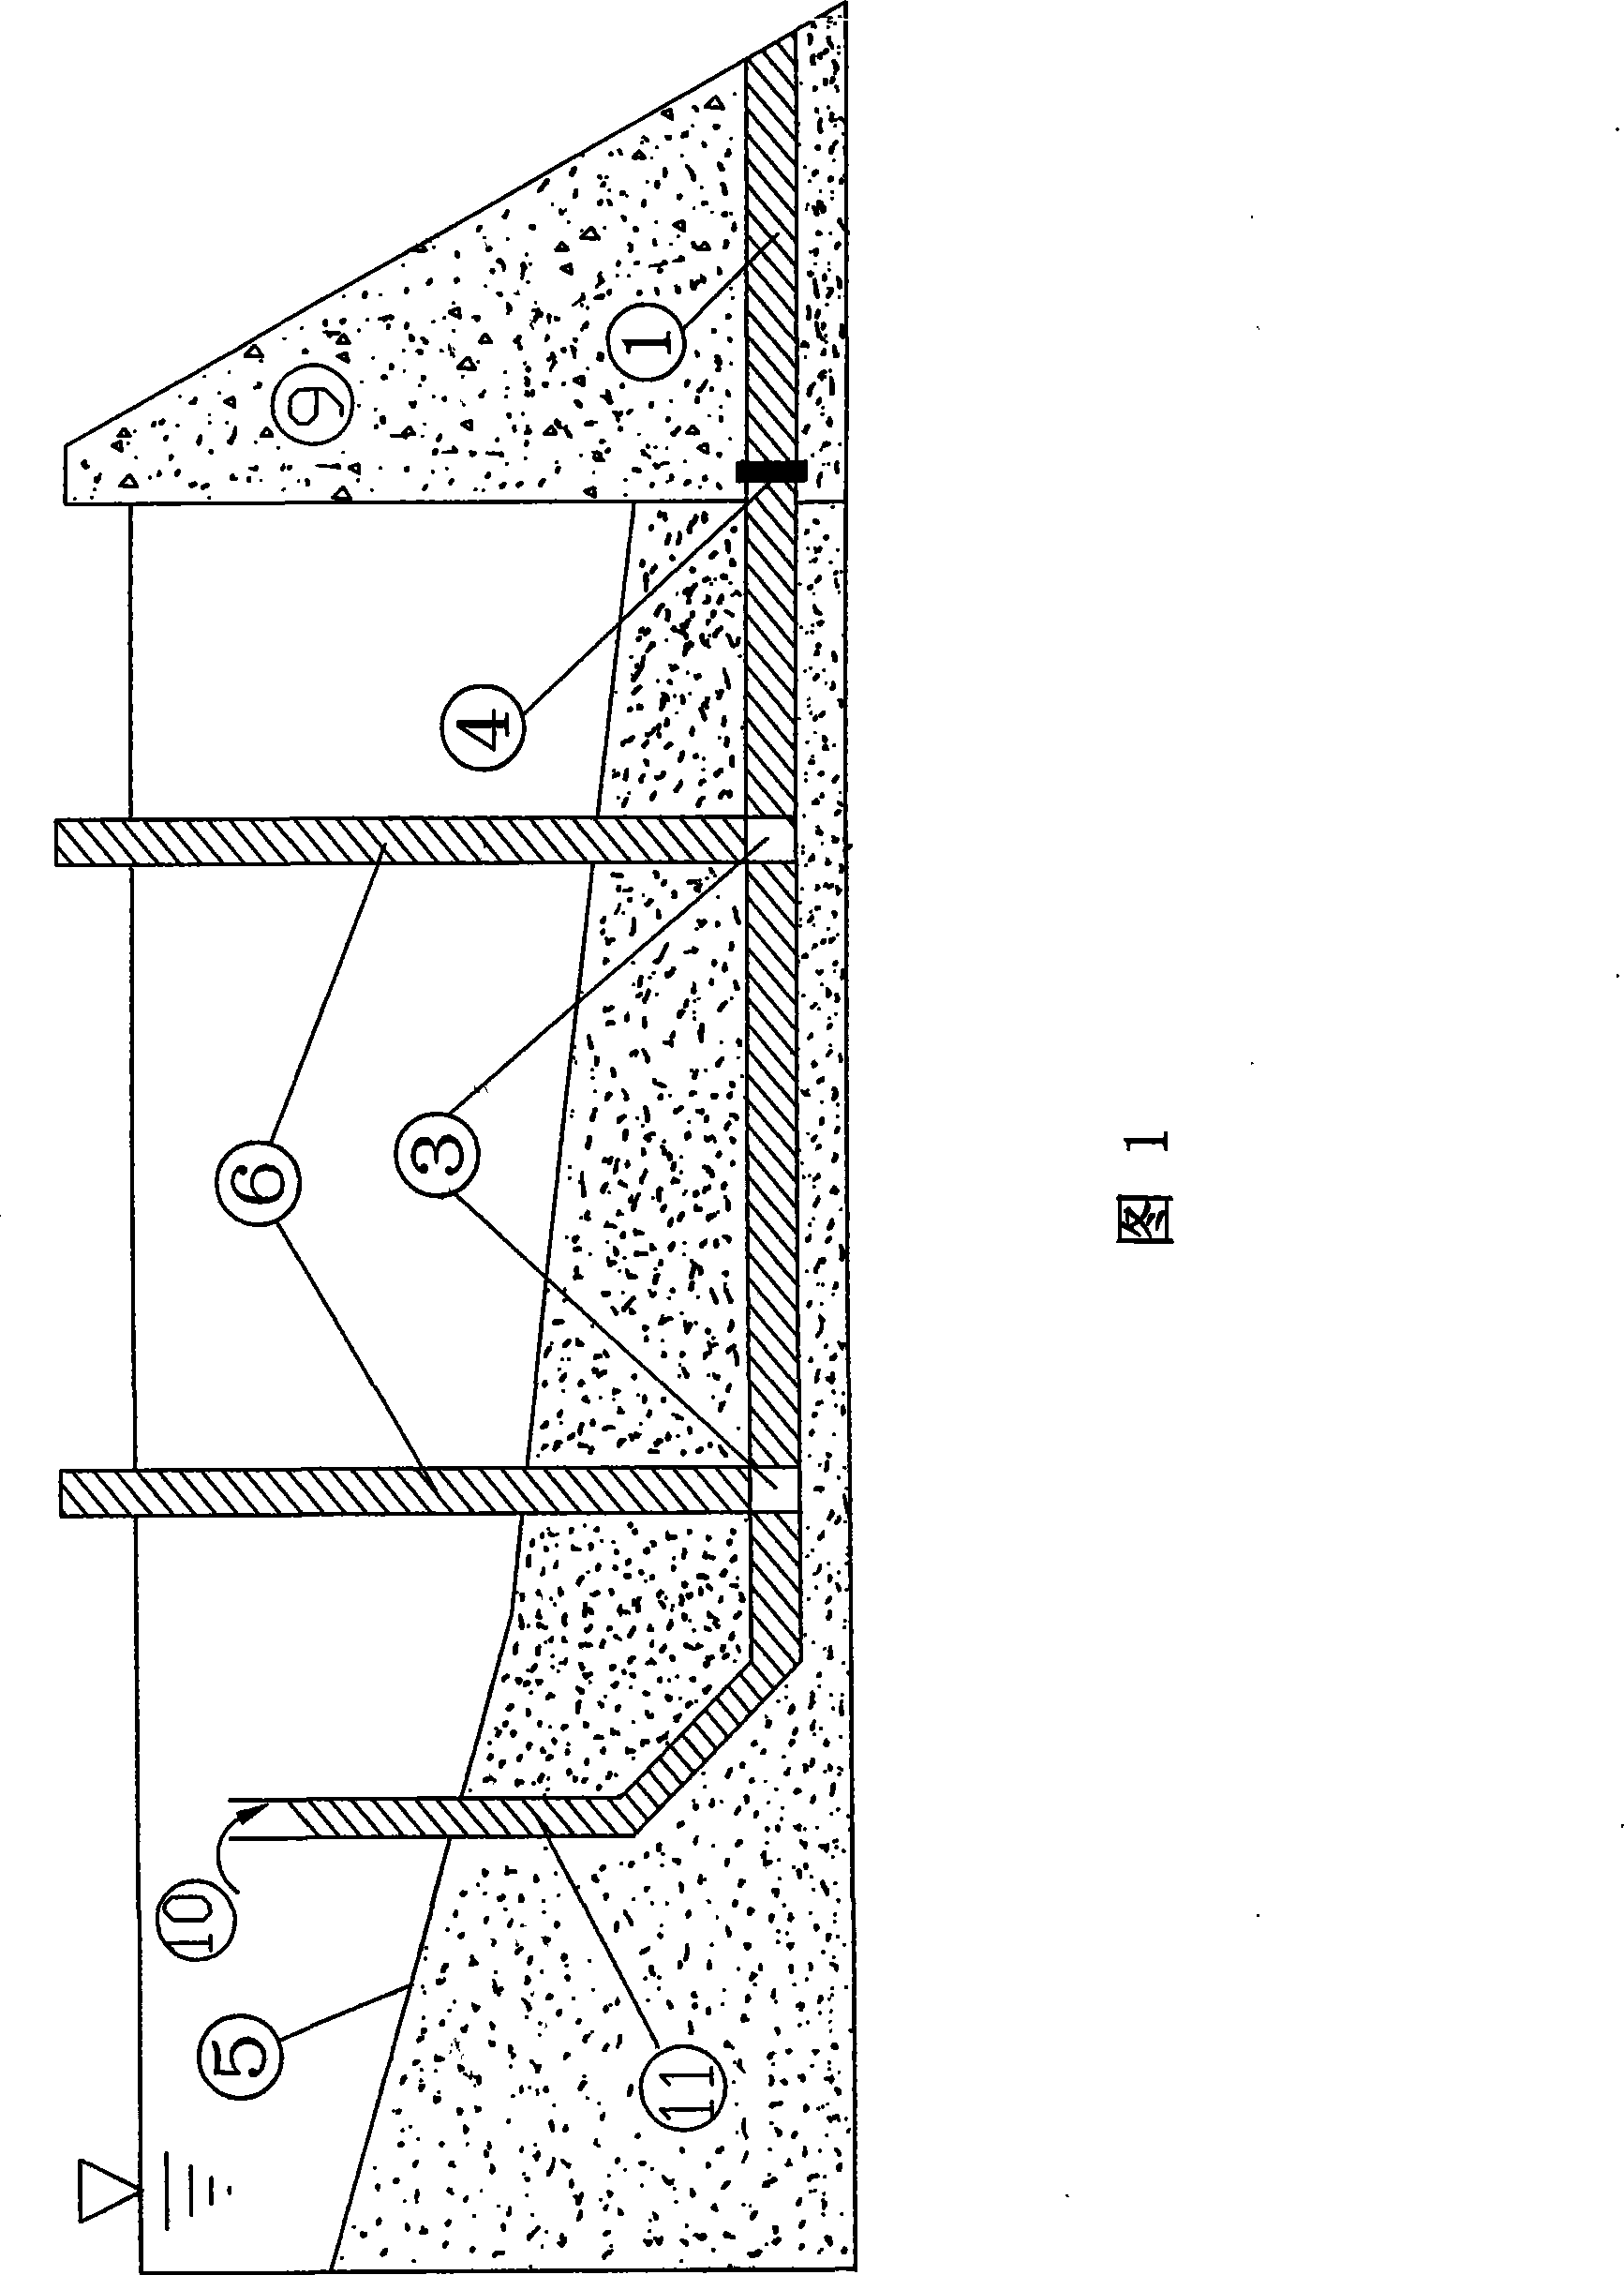 Hydraulic arrangement mode sediment ejection structure